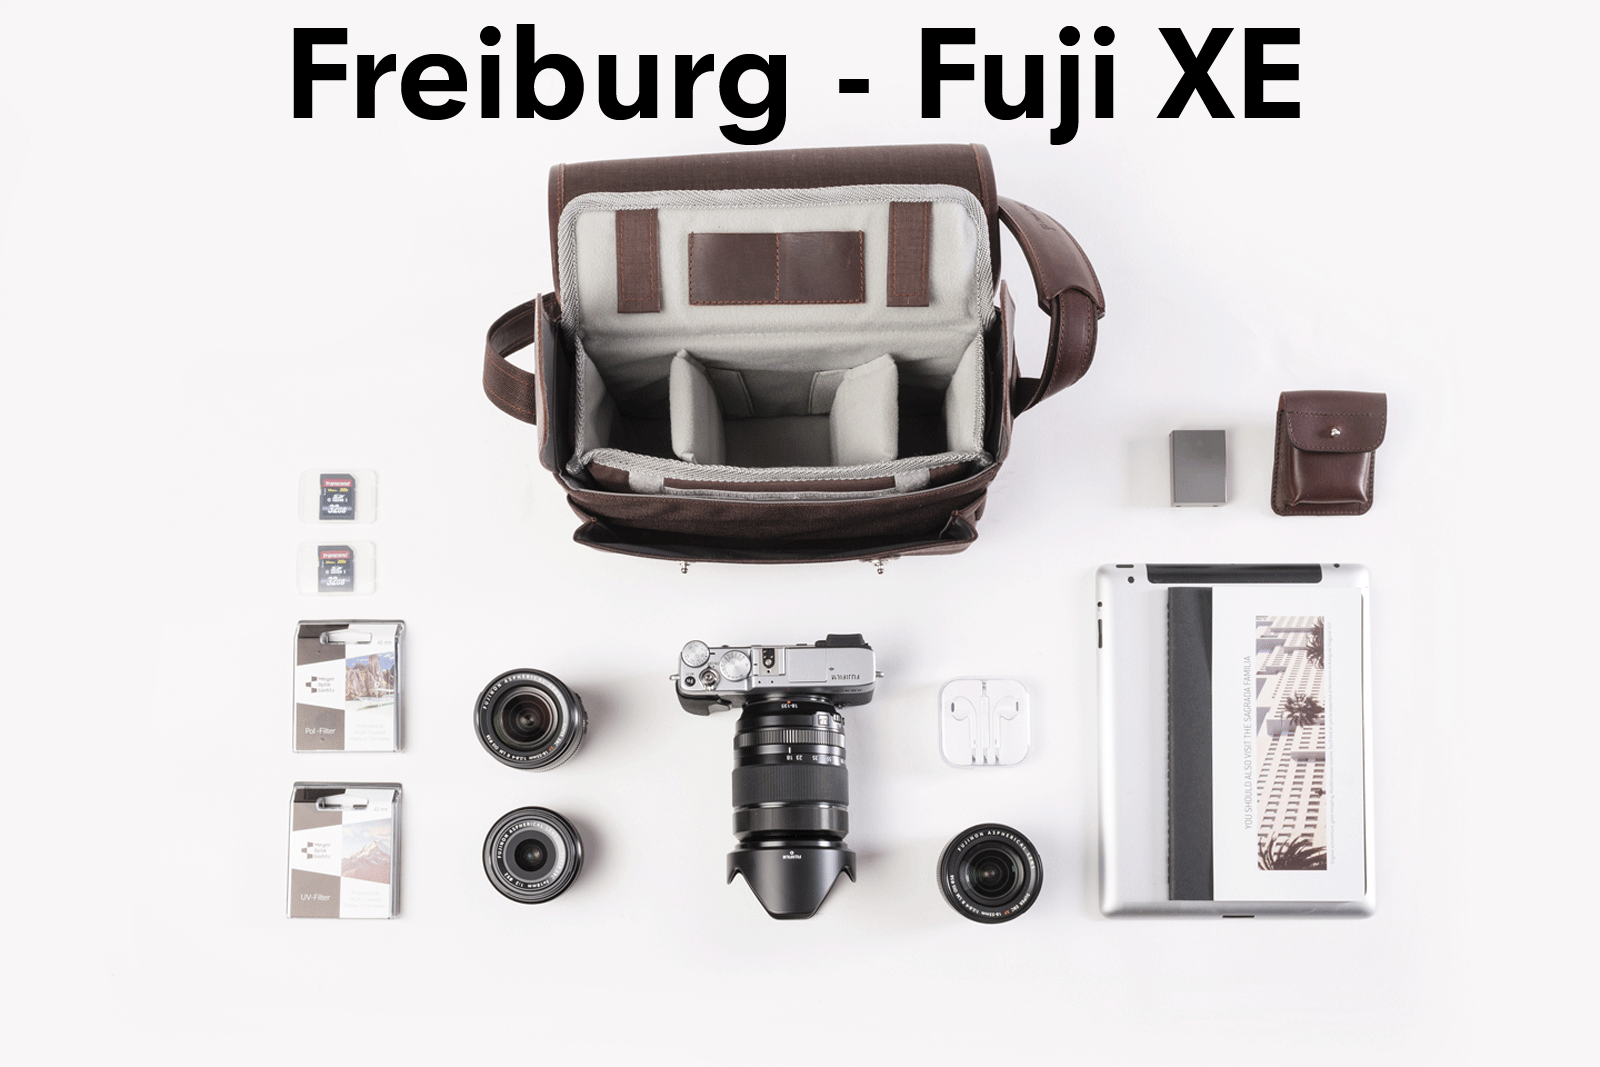 Camera bag FREIBURG full leather